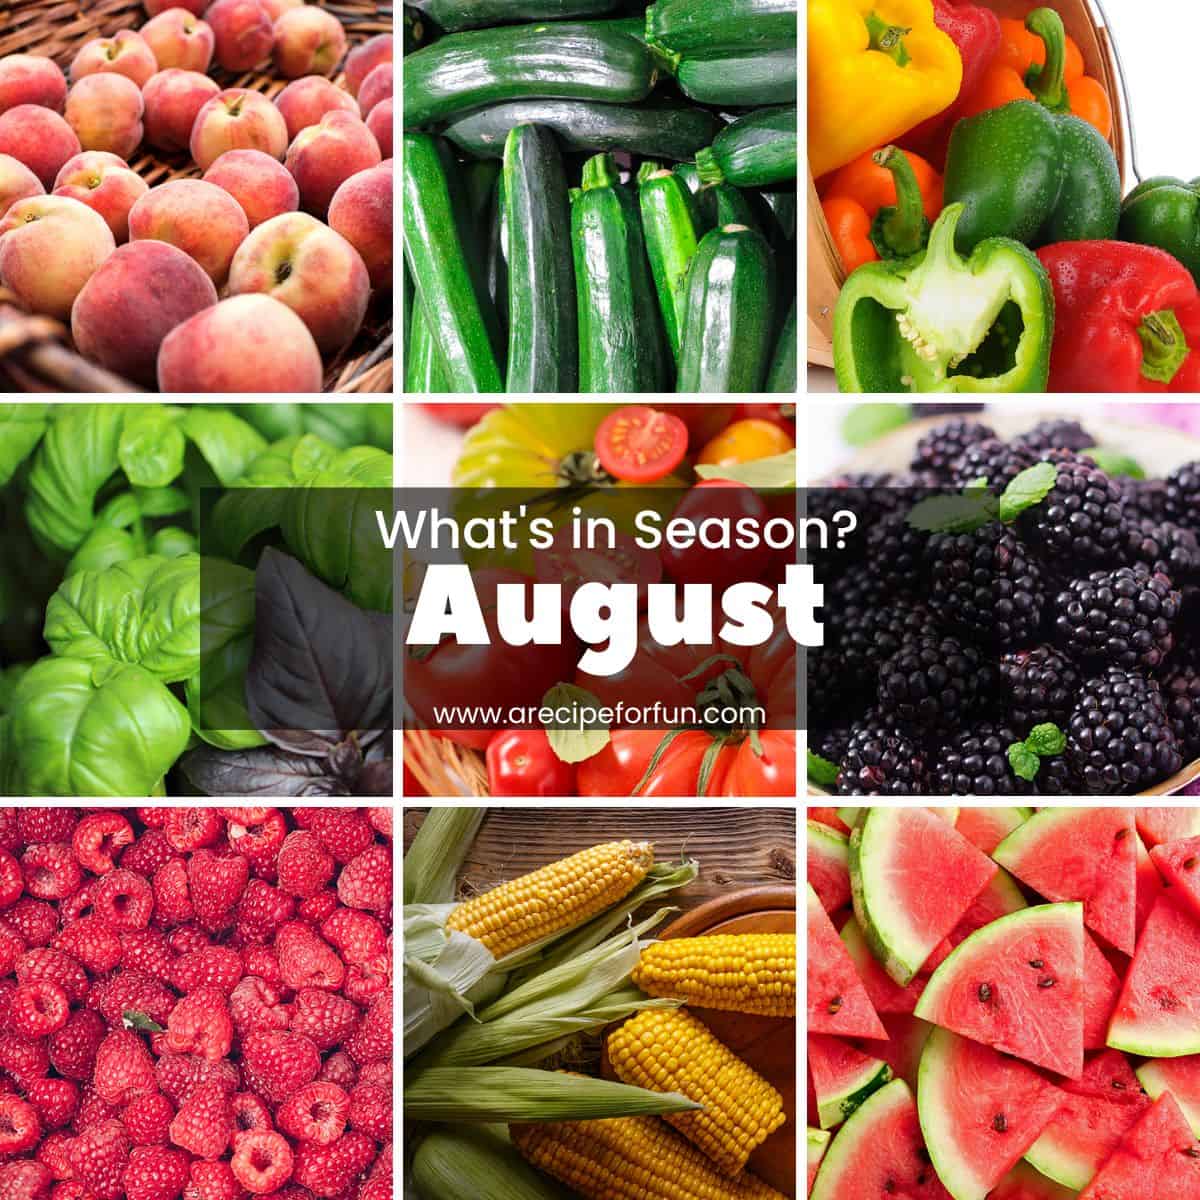 Photo grid of seasonal produce in August